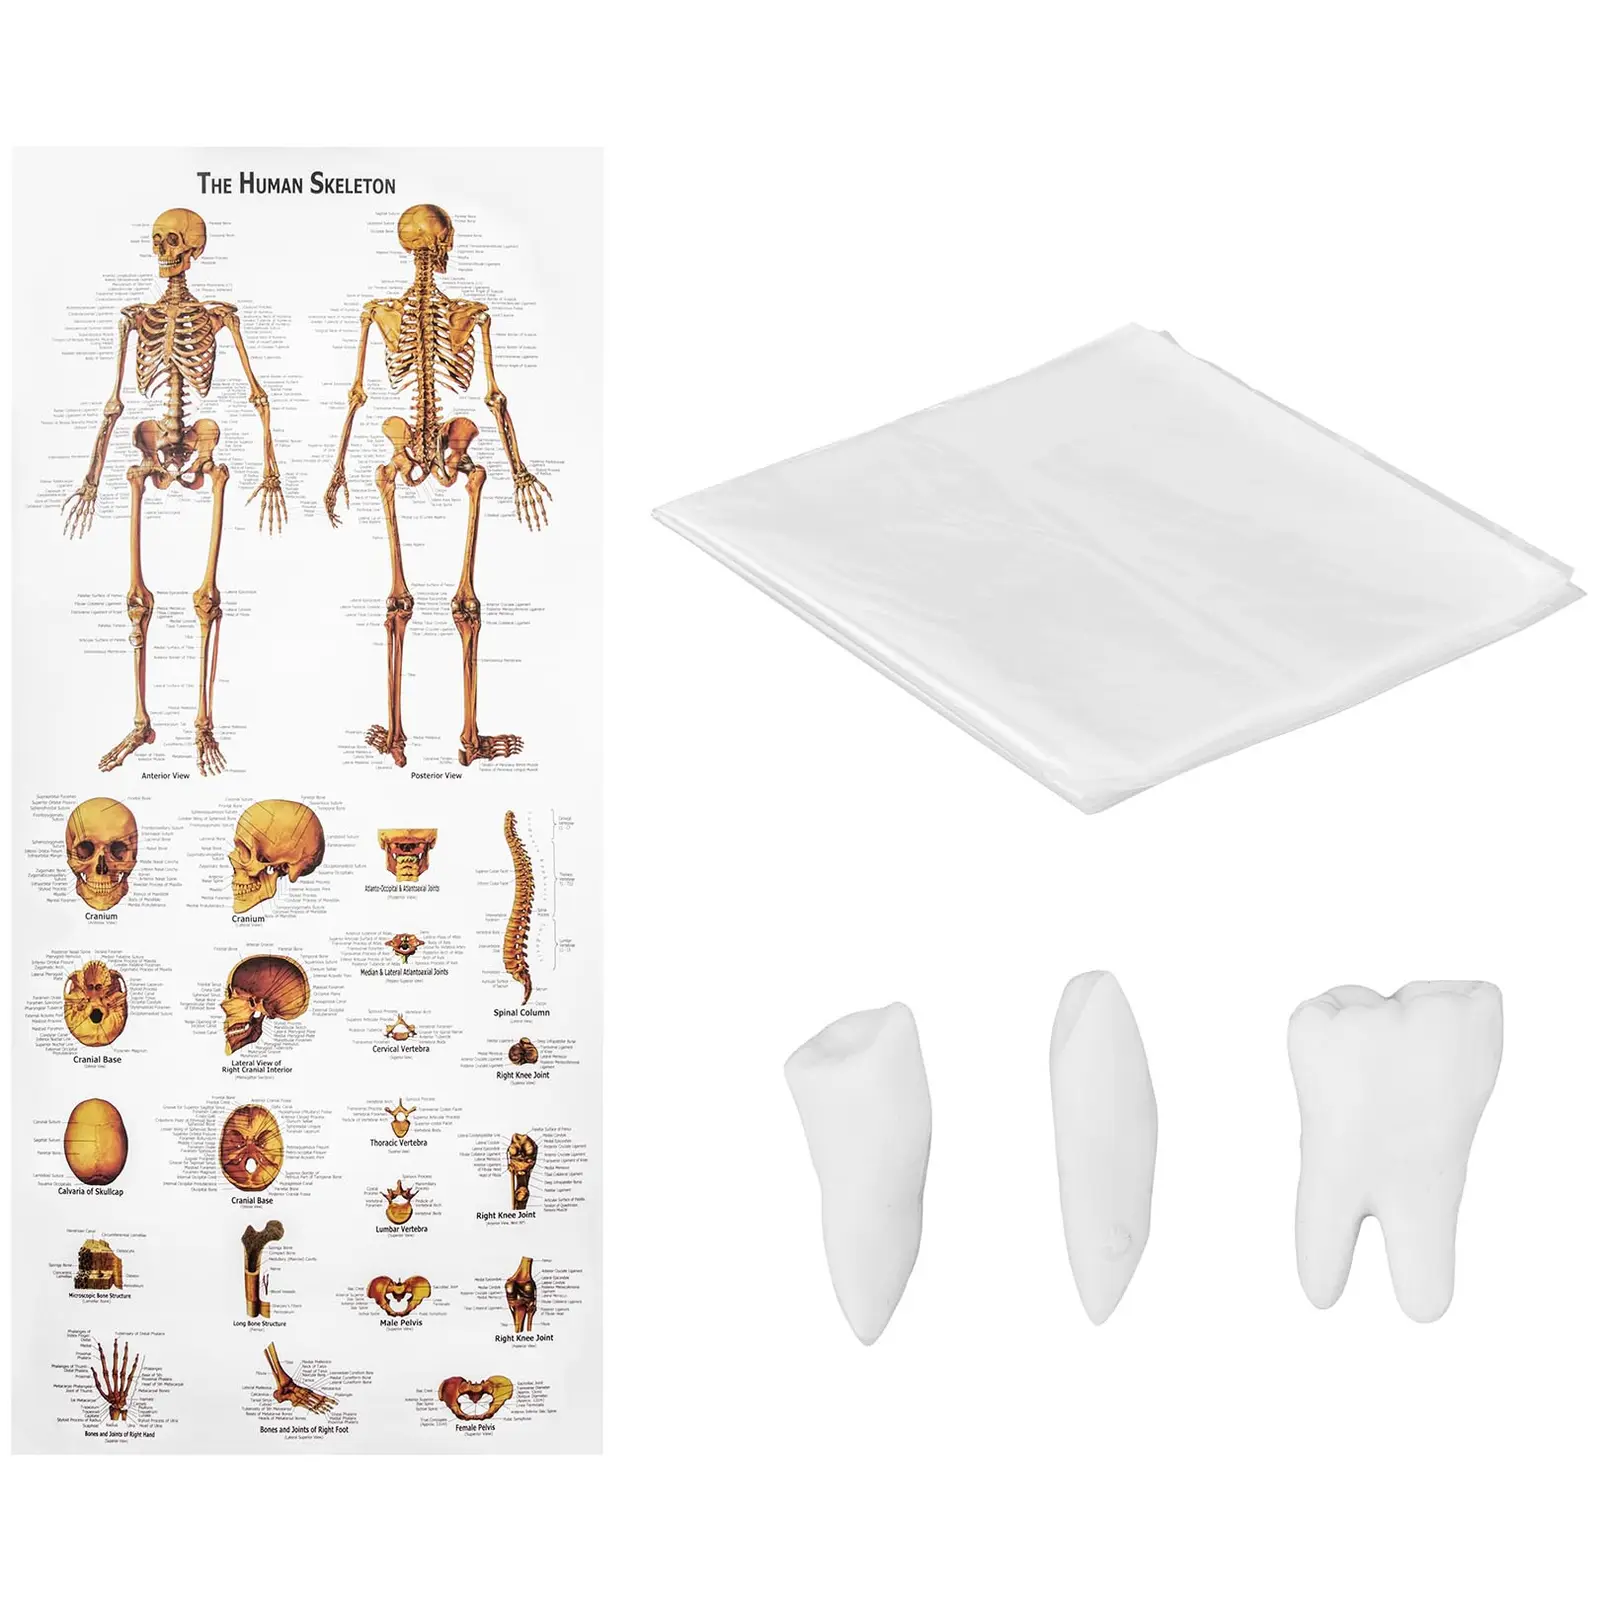 Modelo de esqueleto humano - tamanho natural